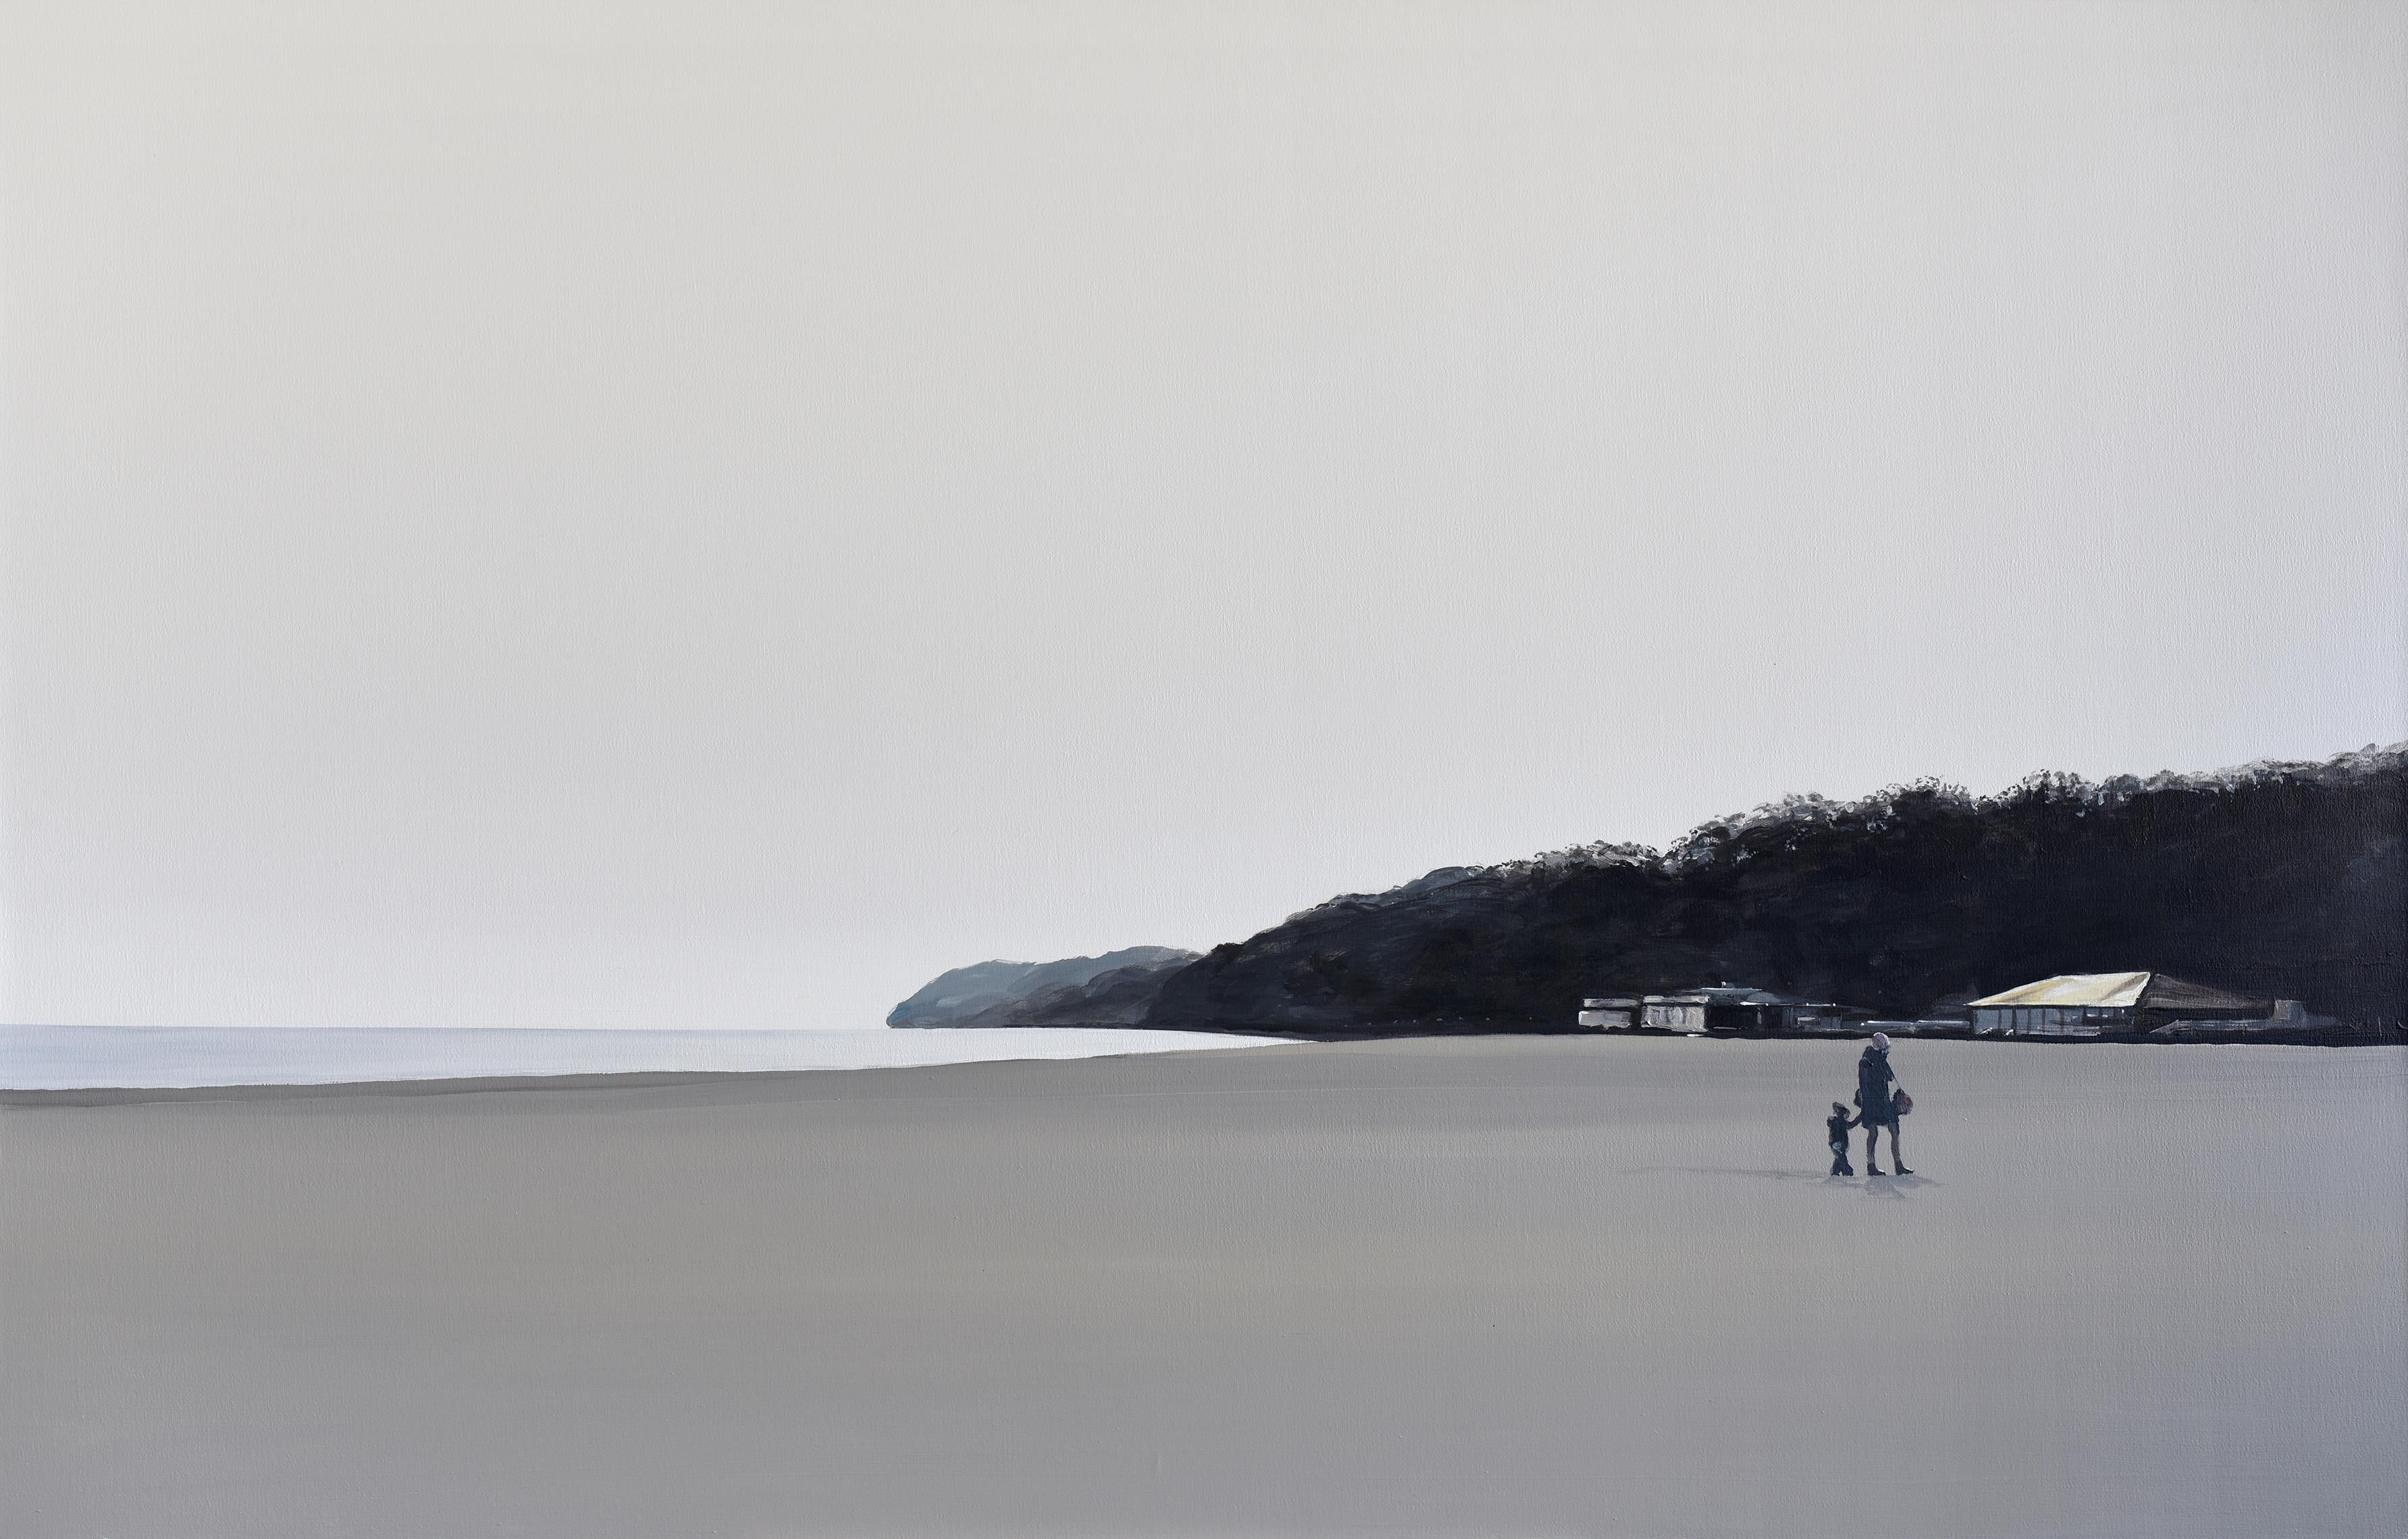 Tomasz Kołodziejczyk Figurative Painting - The Beach, Modern Figurative Landscape Painting, Minimalistic, Sea, Beach View